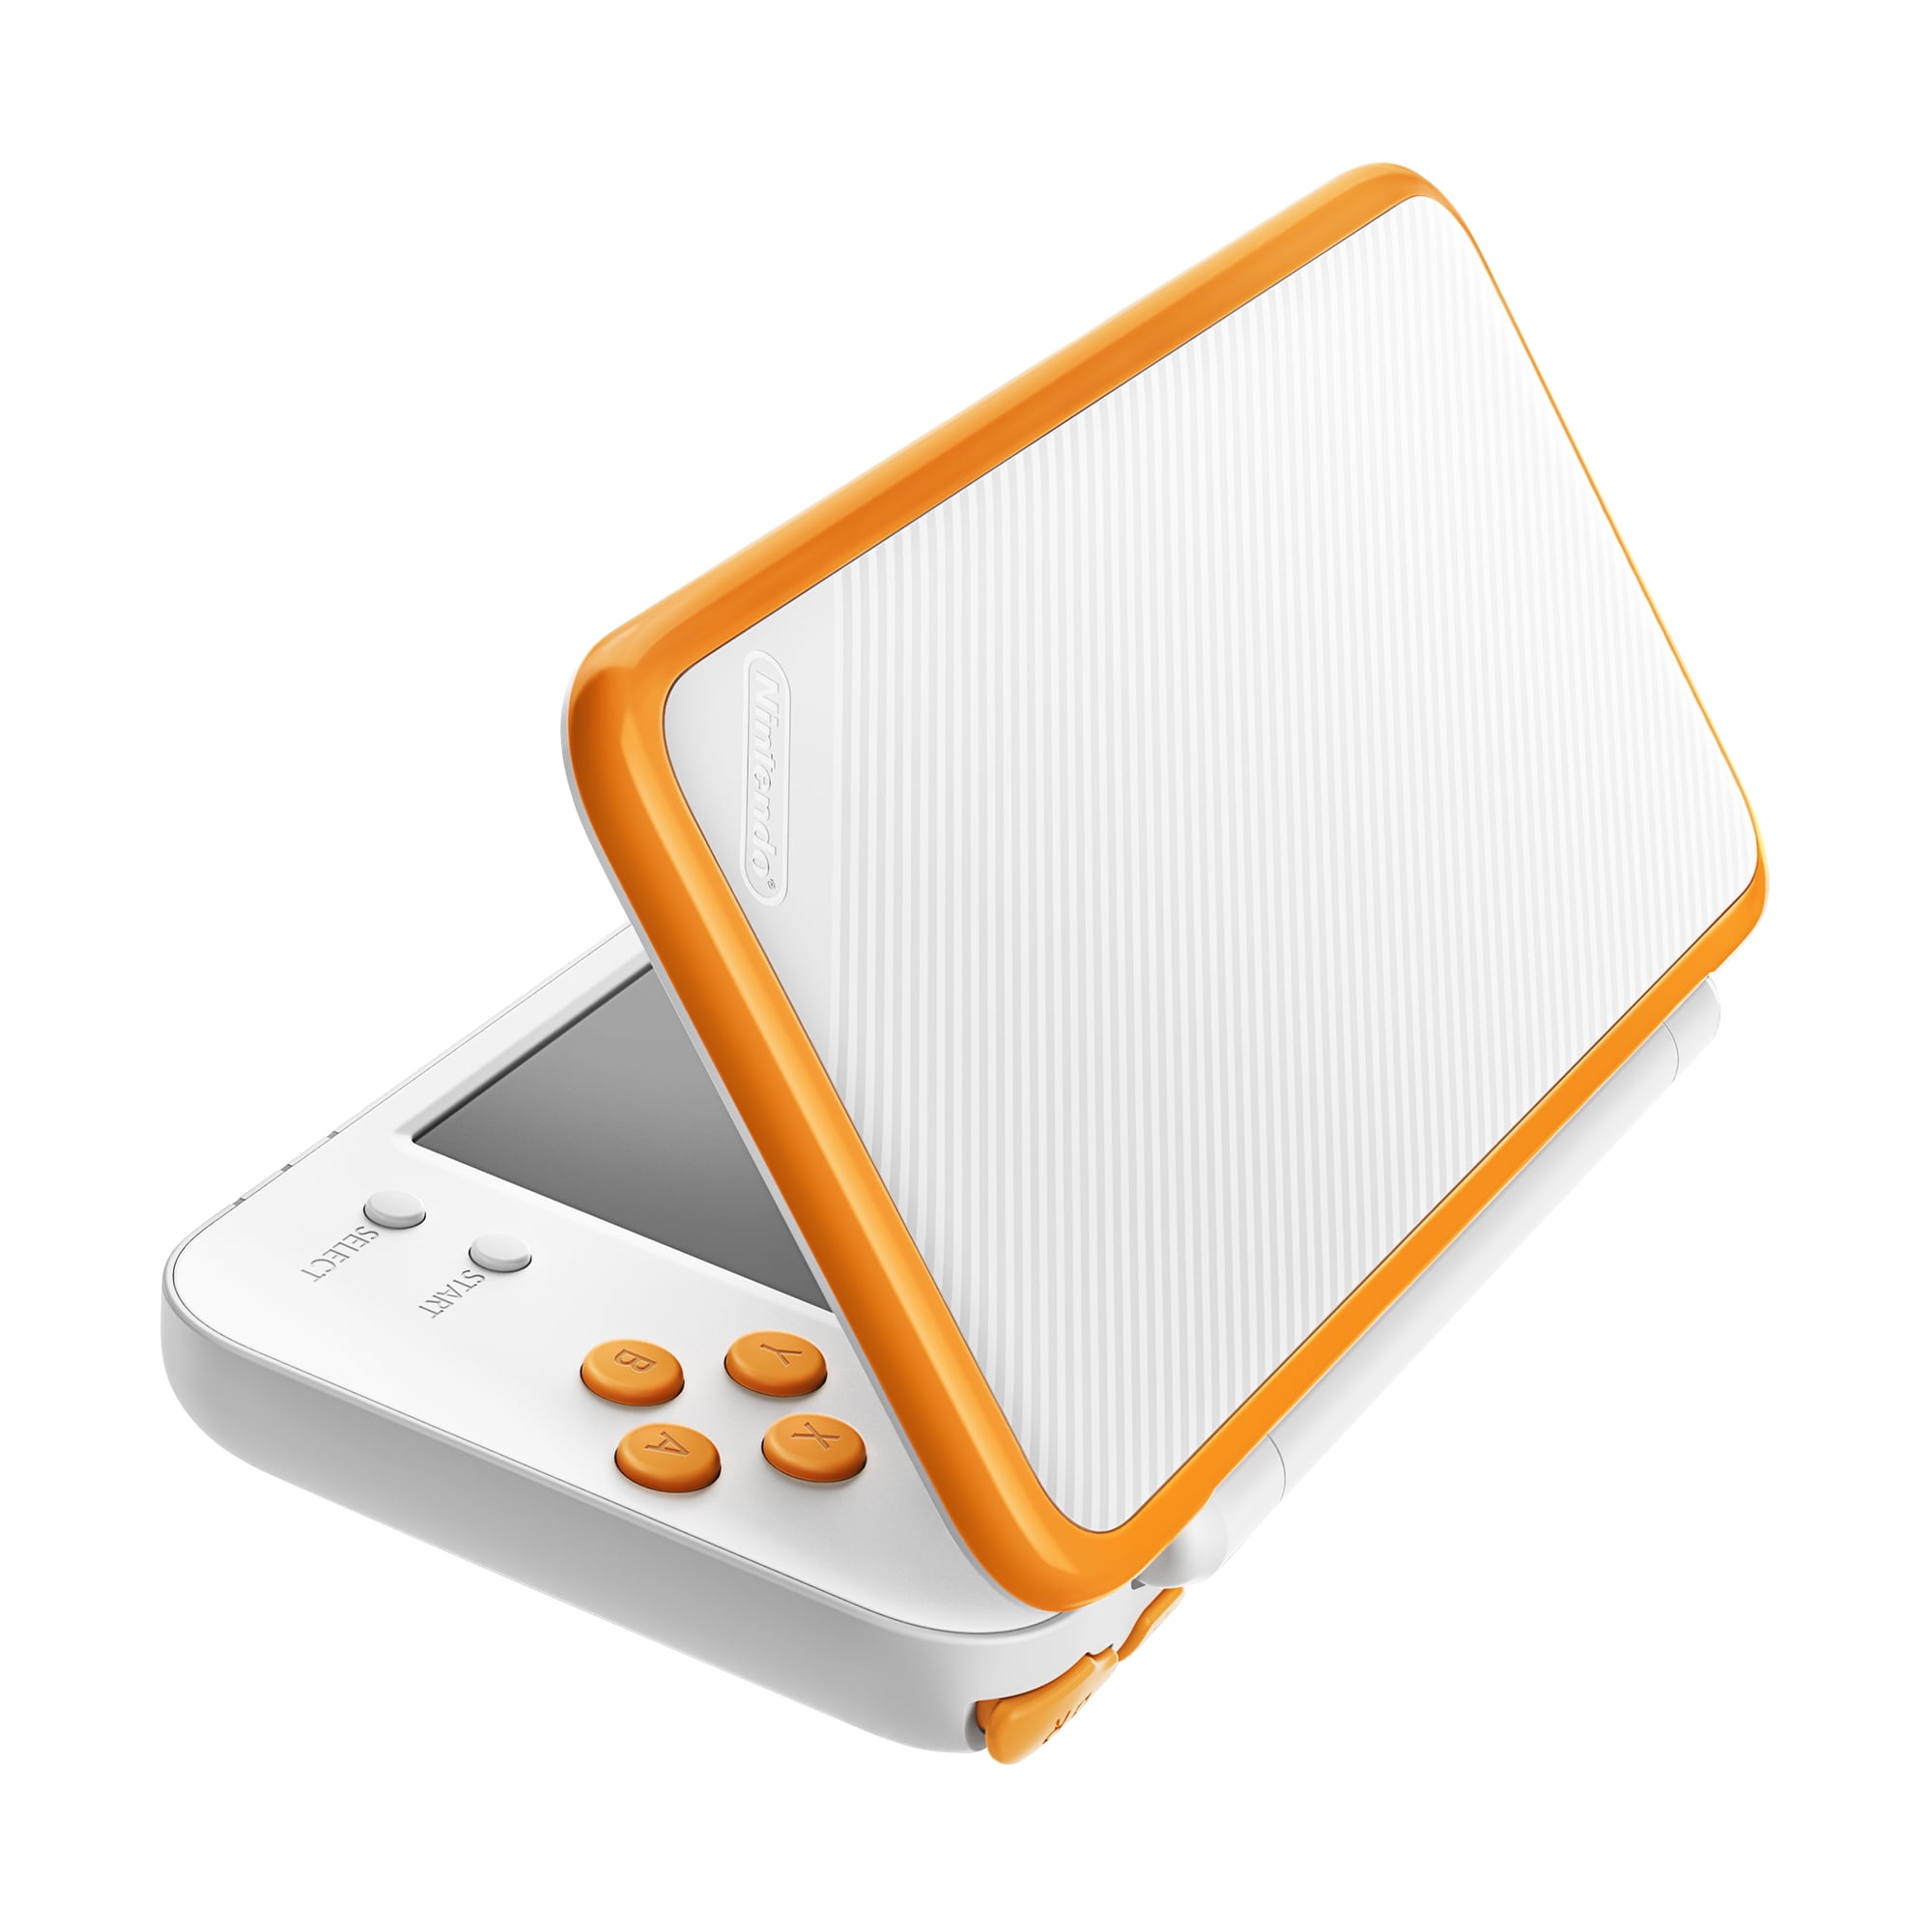 Schaar park Detector New Nintendo 2DS XL System w/ Mario Kart 7 Pre-installed, Orange & White -  Walmart.com